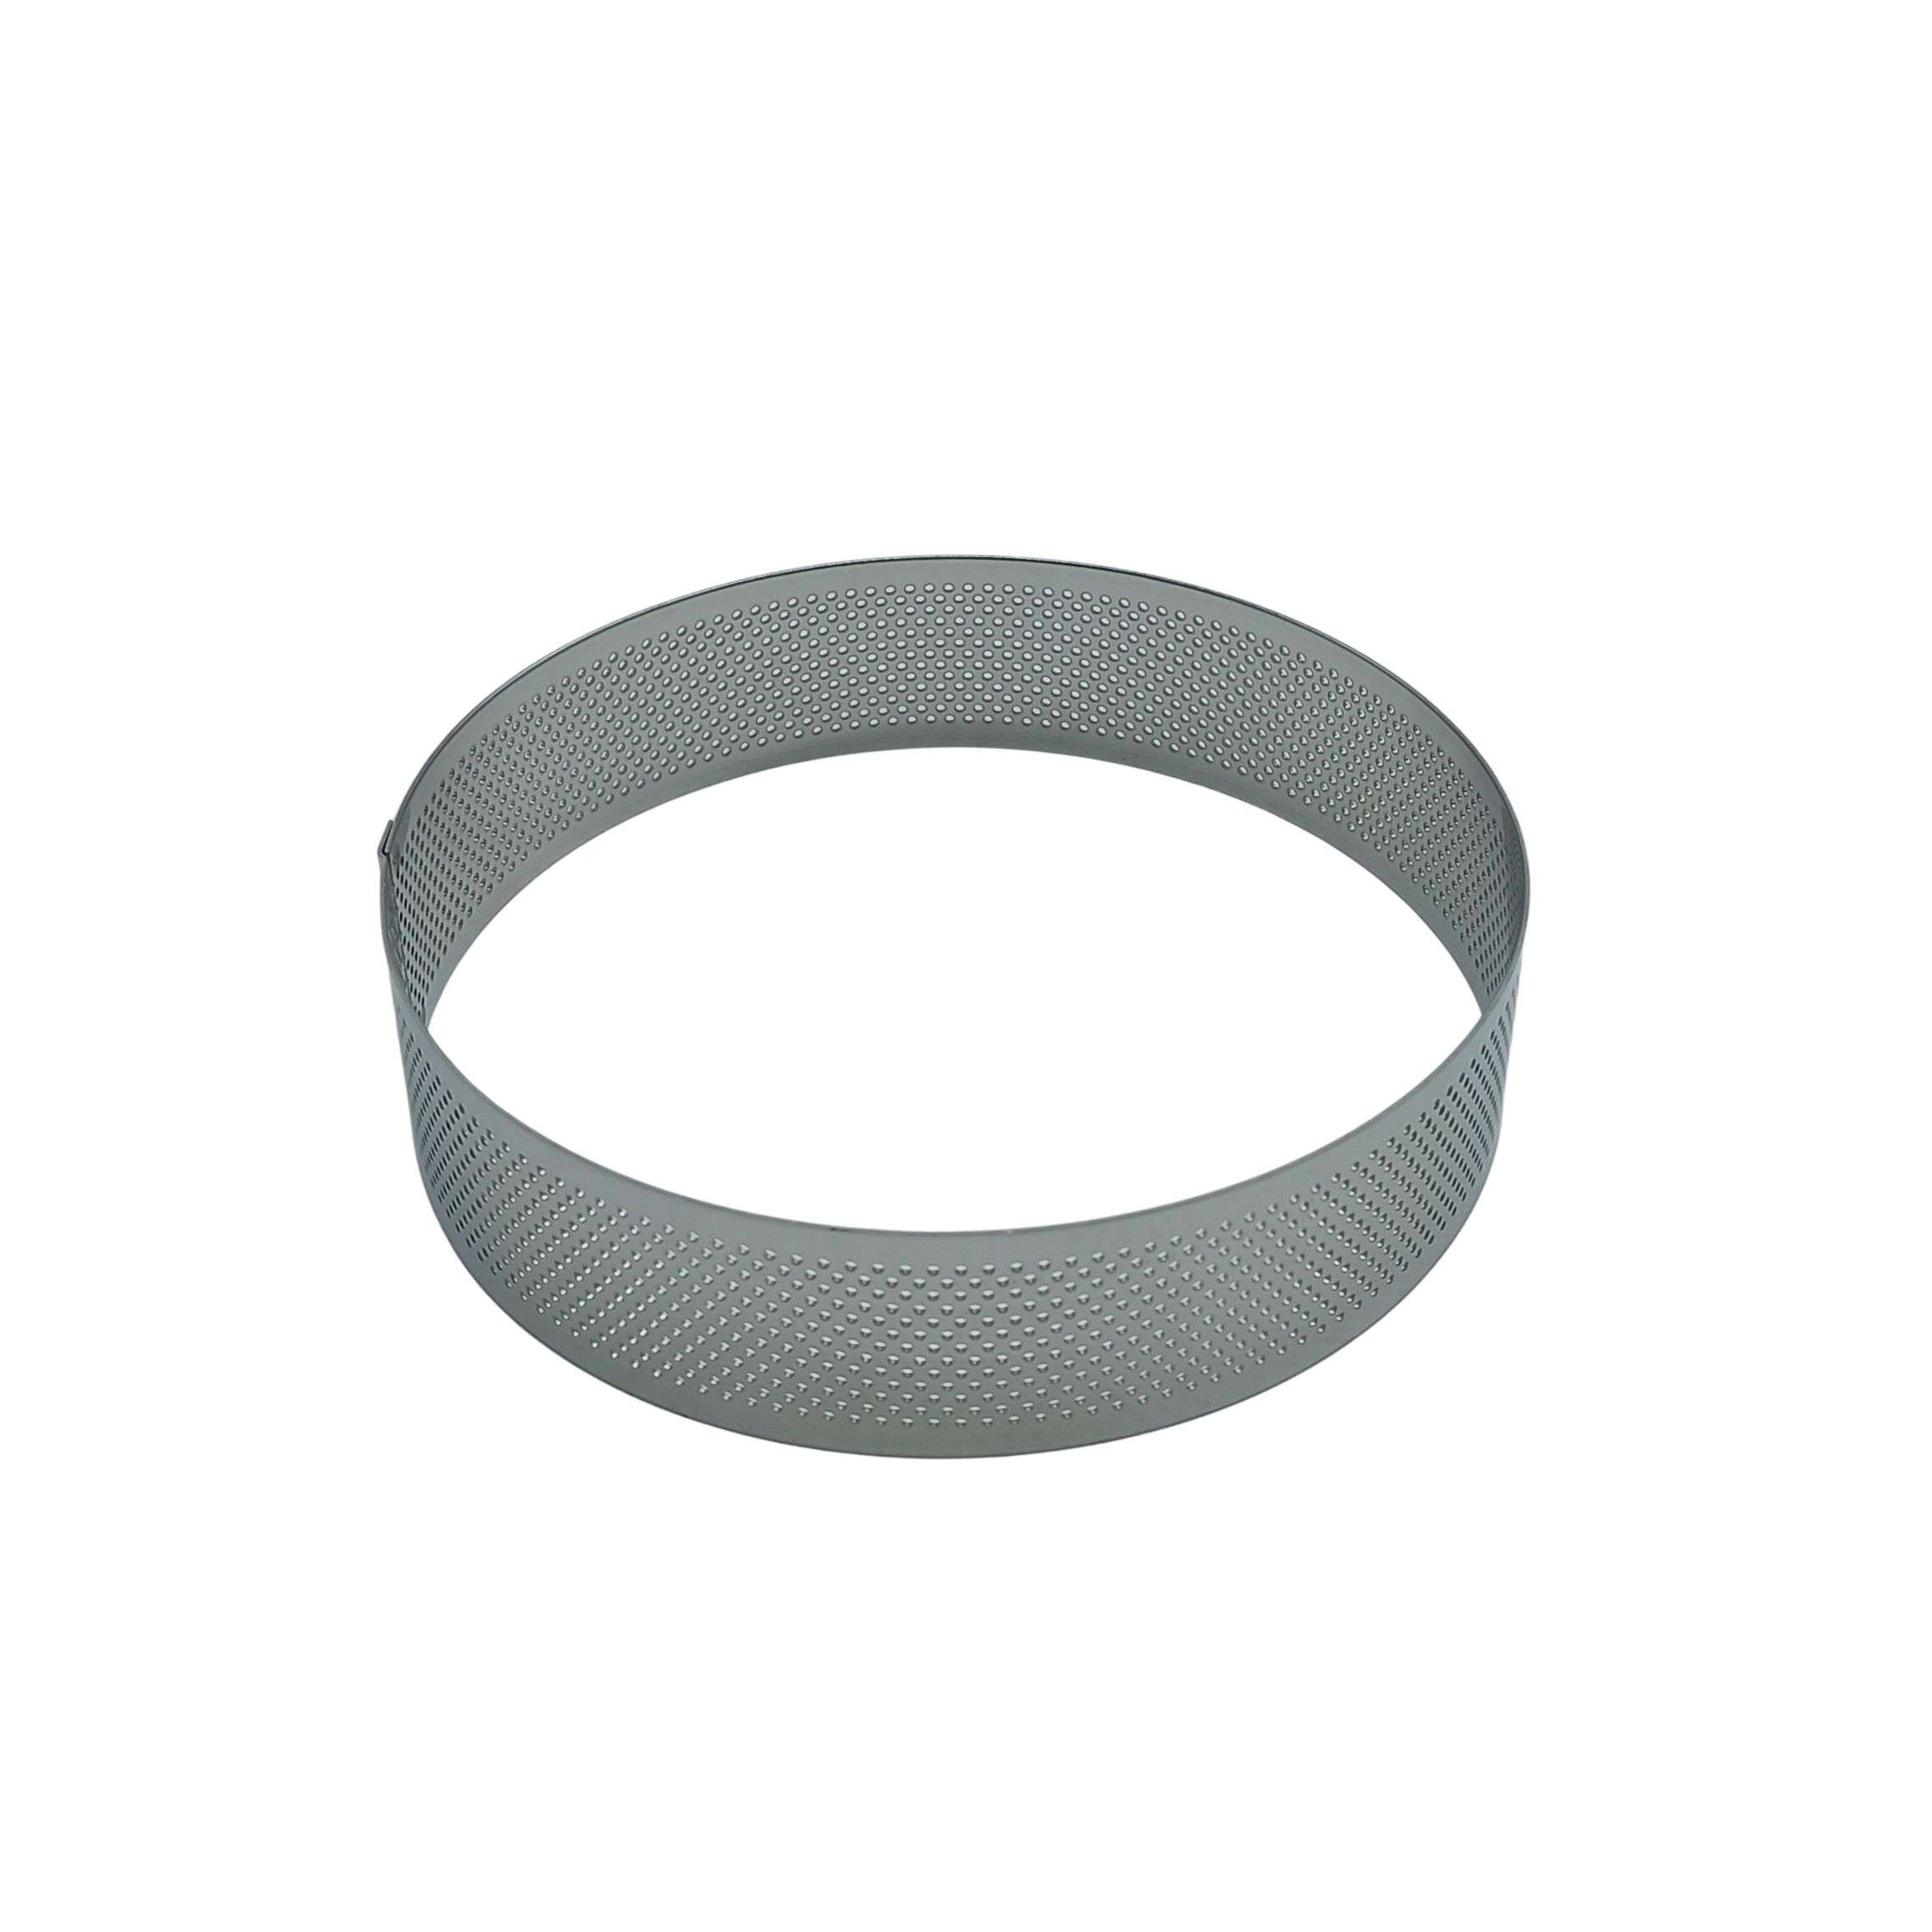 Coppapasta microforato tondo in acciaio inox 18/10 H 3,5 cm - Lumen  Casalinghi